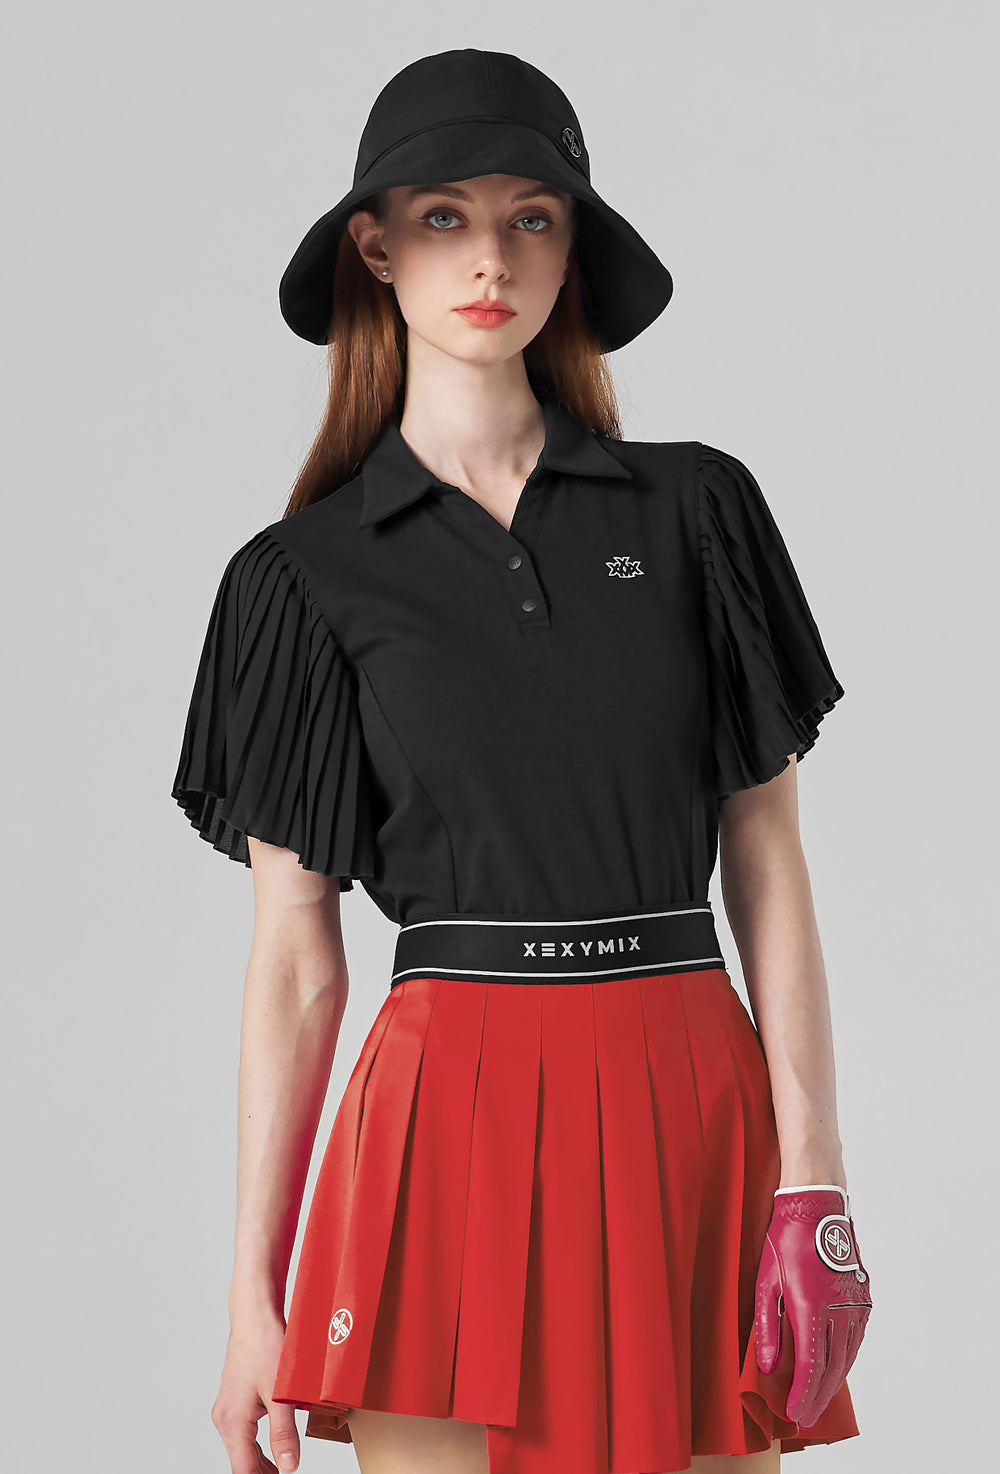 Pleated Polo Short Sleeve - Black